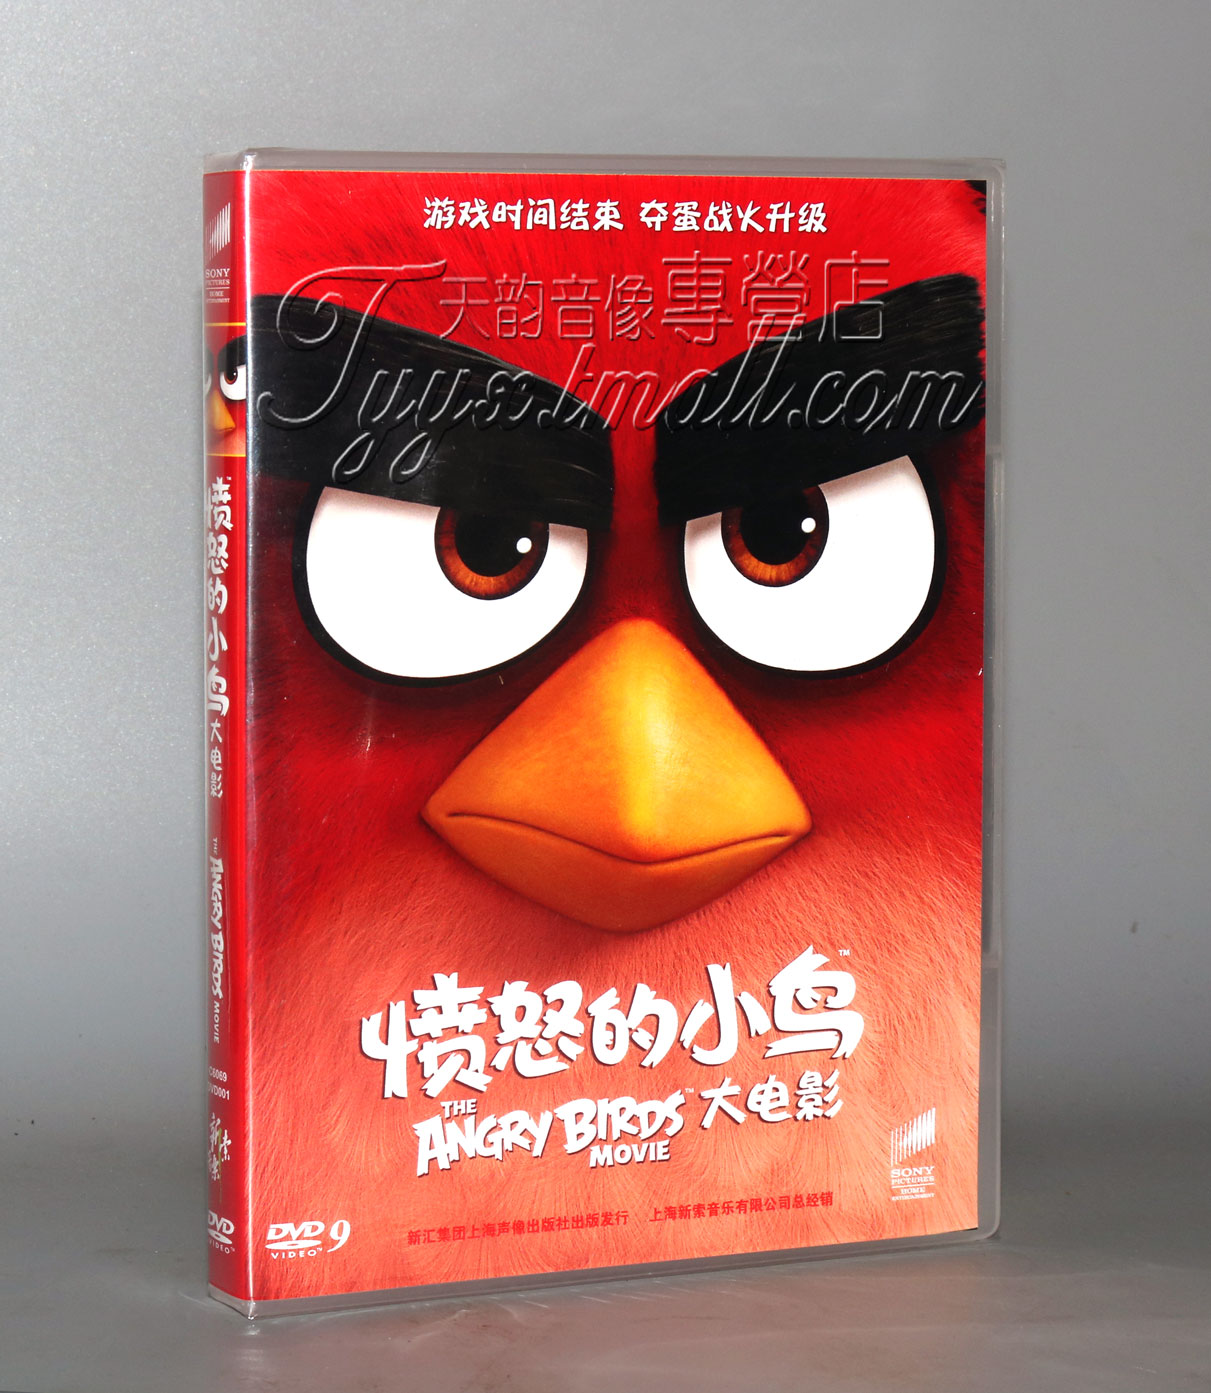 正版愤怒的小鸟大电影 DVD9国语配音儿童动画片-封面